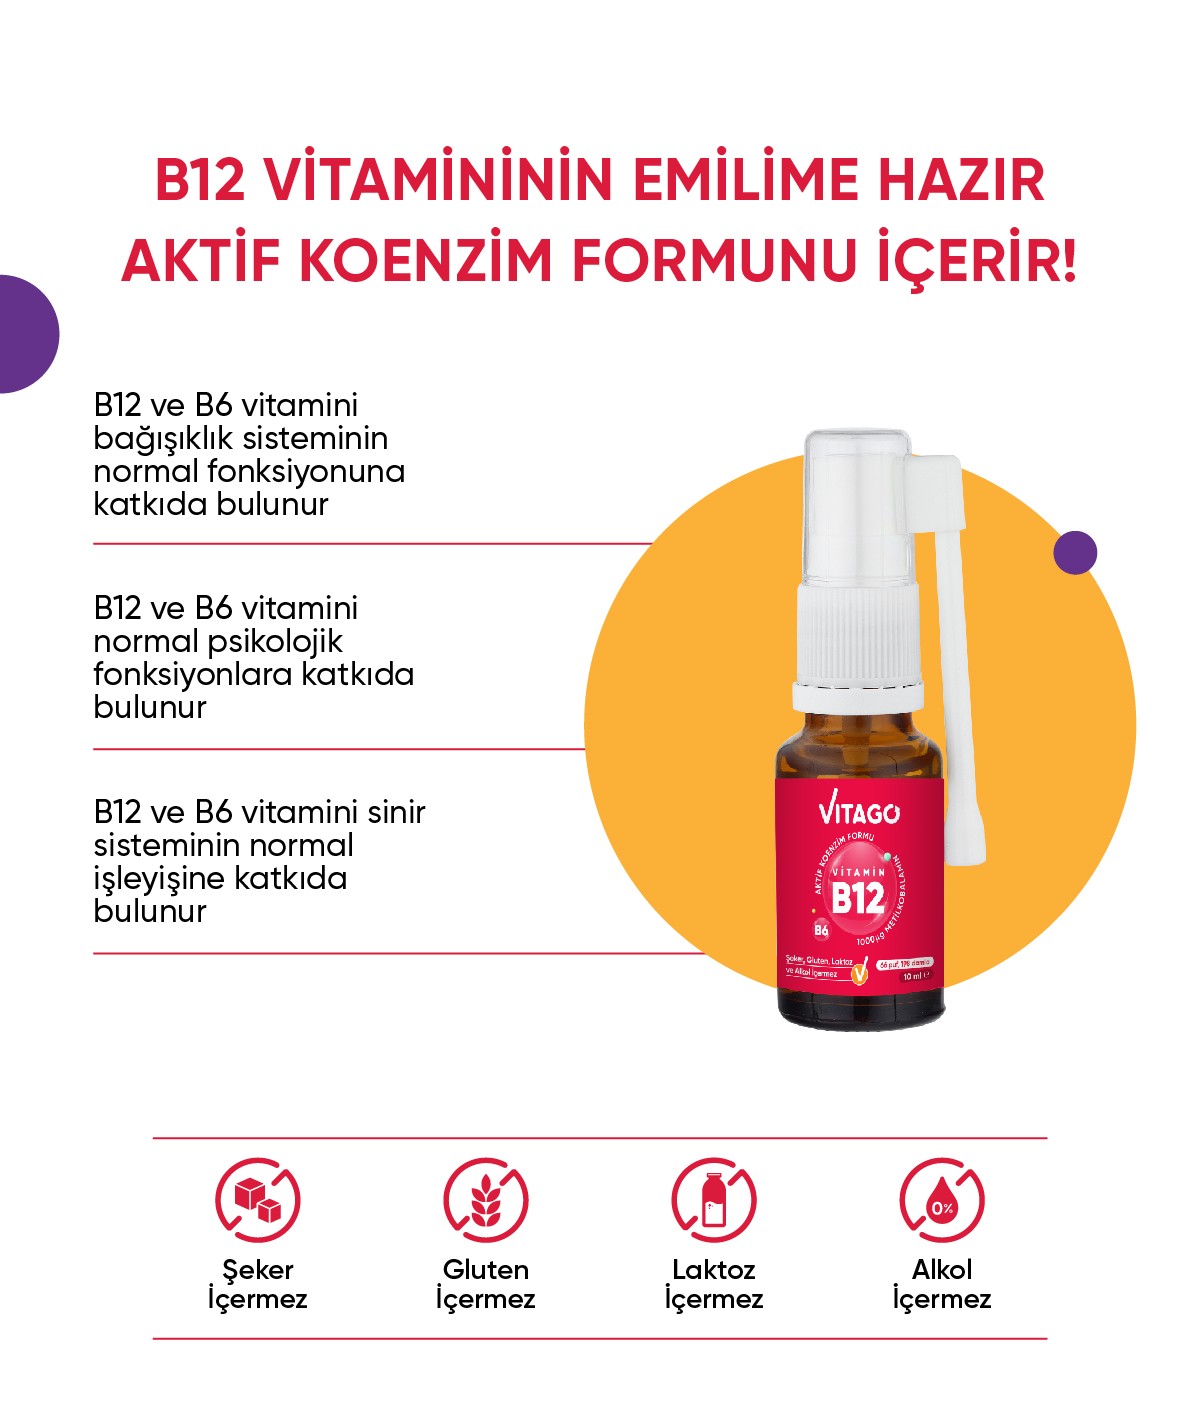 Vitago ProMetilkobalamin Vitamin B6 Vitaminleri İçeren Oral Sprey Takviye Edici Gıda